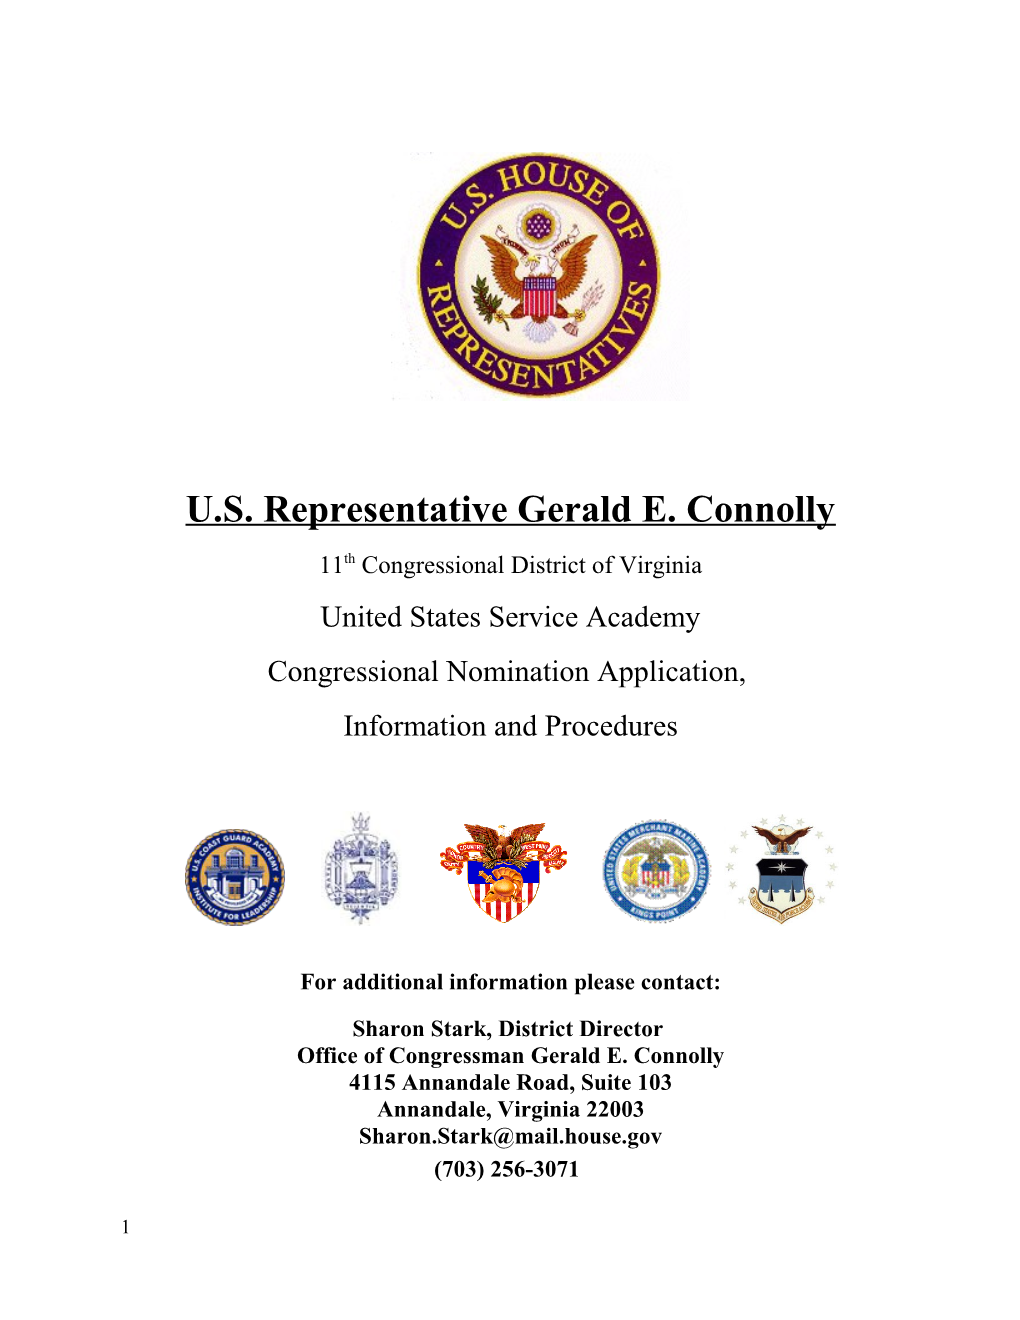 U.S. Representative Gerald E. Connolly